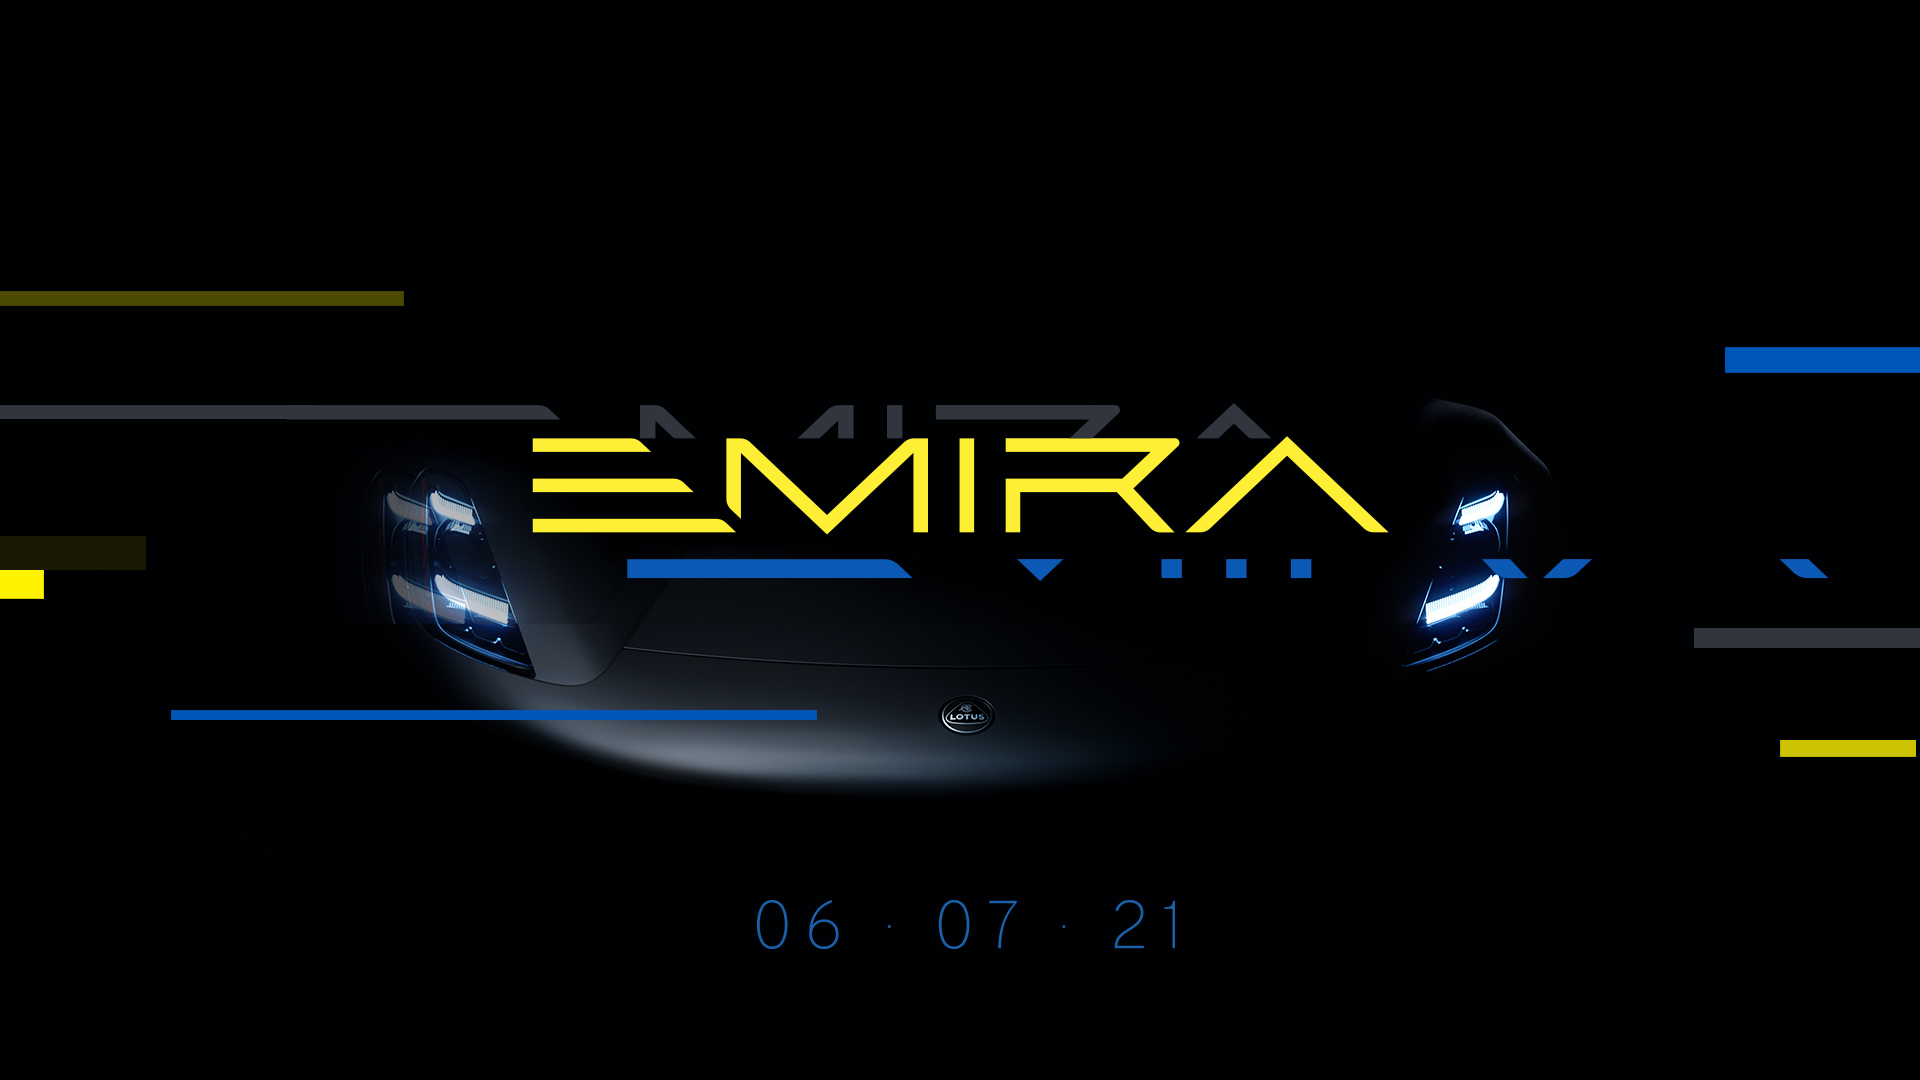 ロータス 7月発表の新型車名称 エミーラ を公表 Evハイパーカー エヴァイヤ の情報も 中古車なら グーネット